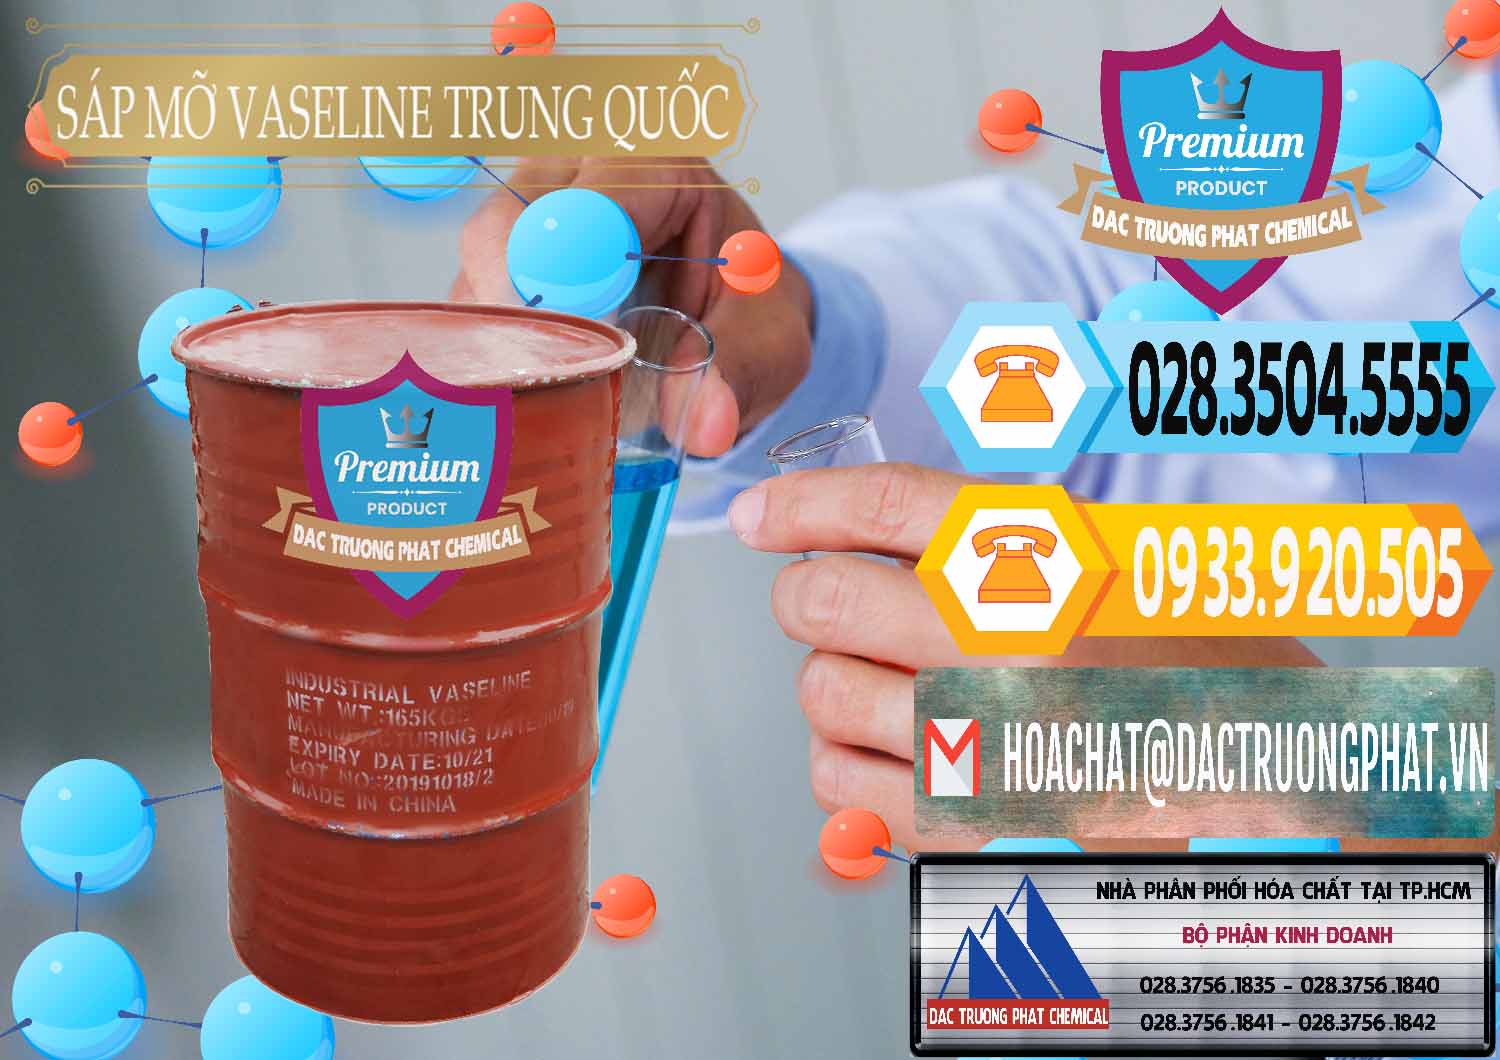 Công ty chuyên bán - cung cấp Sáp Mỡ Vaseline Trung Quốc China - 0122 - Chuyên kinh doanh và phân phối hóa chất tại TP.HCM - hoachattayrua.net